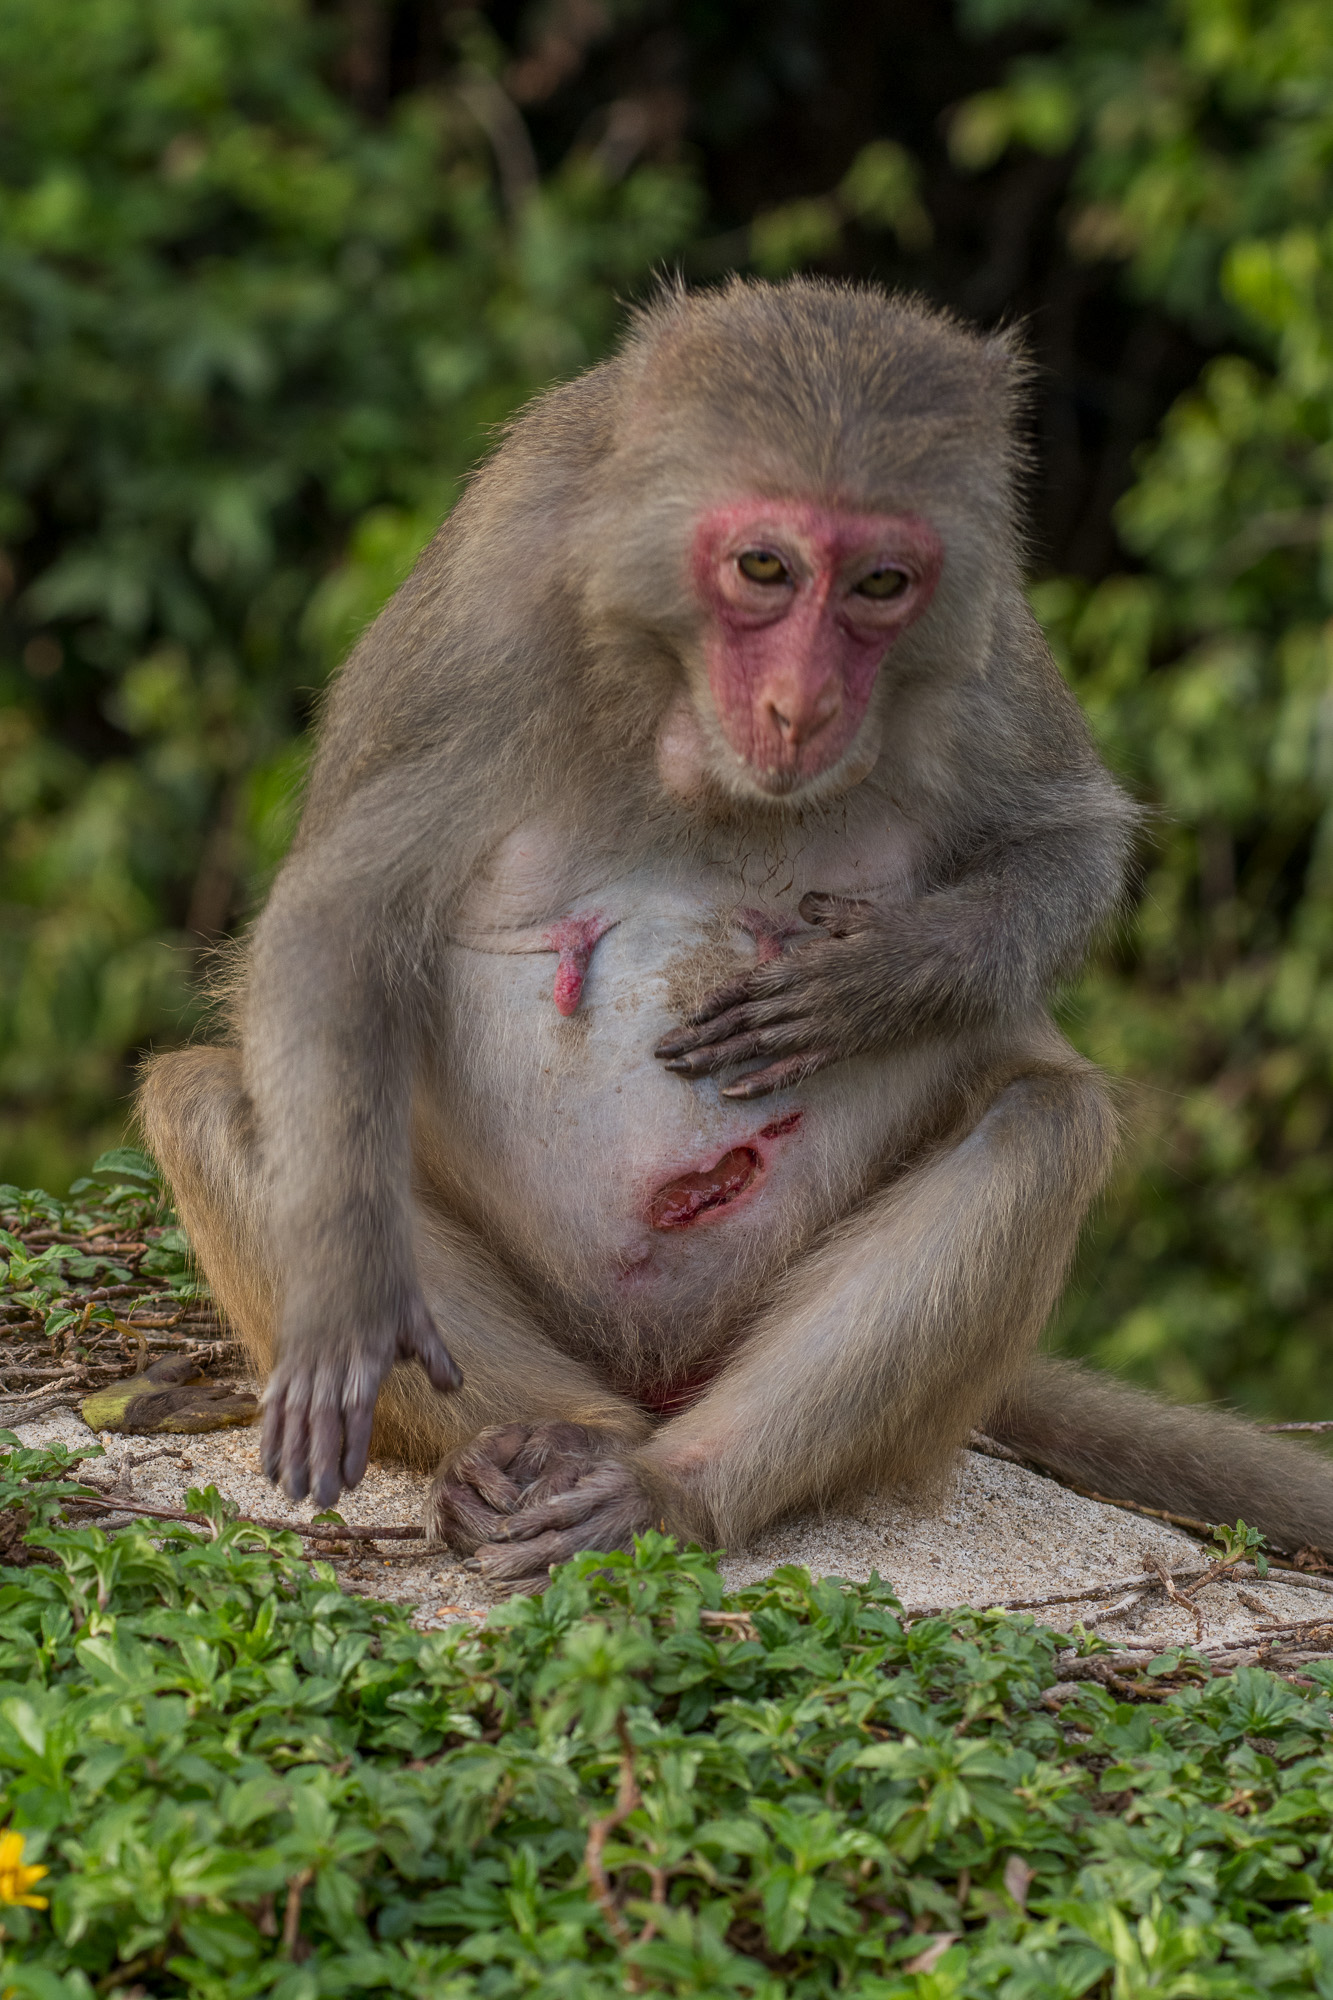 Hãy xem hình ảnh ngộ nghĩnh của khỉ con bị thương tích, bạn sẽ cảm thấy thương hại nhưng cũng đầy hy vọng khi nhìn thấy nỗ lực và sự kiên nhẫn của chúng để hồi phục. Hãy cho chúng ta nhiều tình yêu và sự quan tâm để chúng có thể vượt qua khó khăn này nhé.